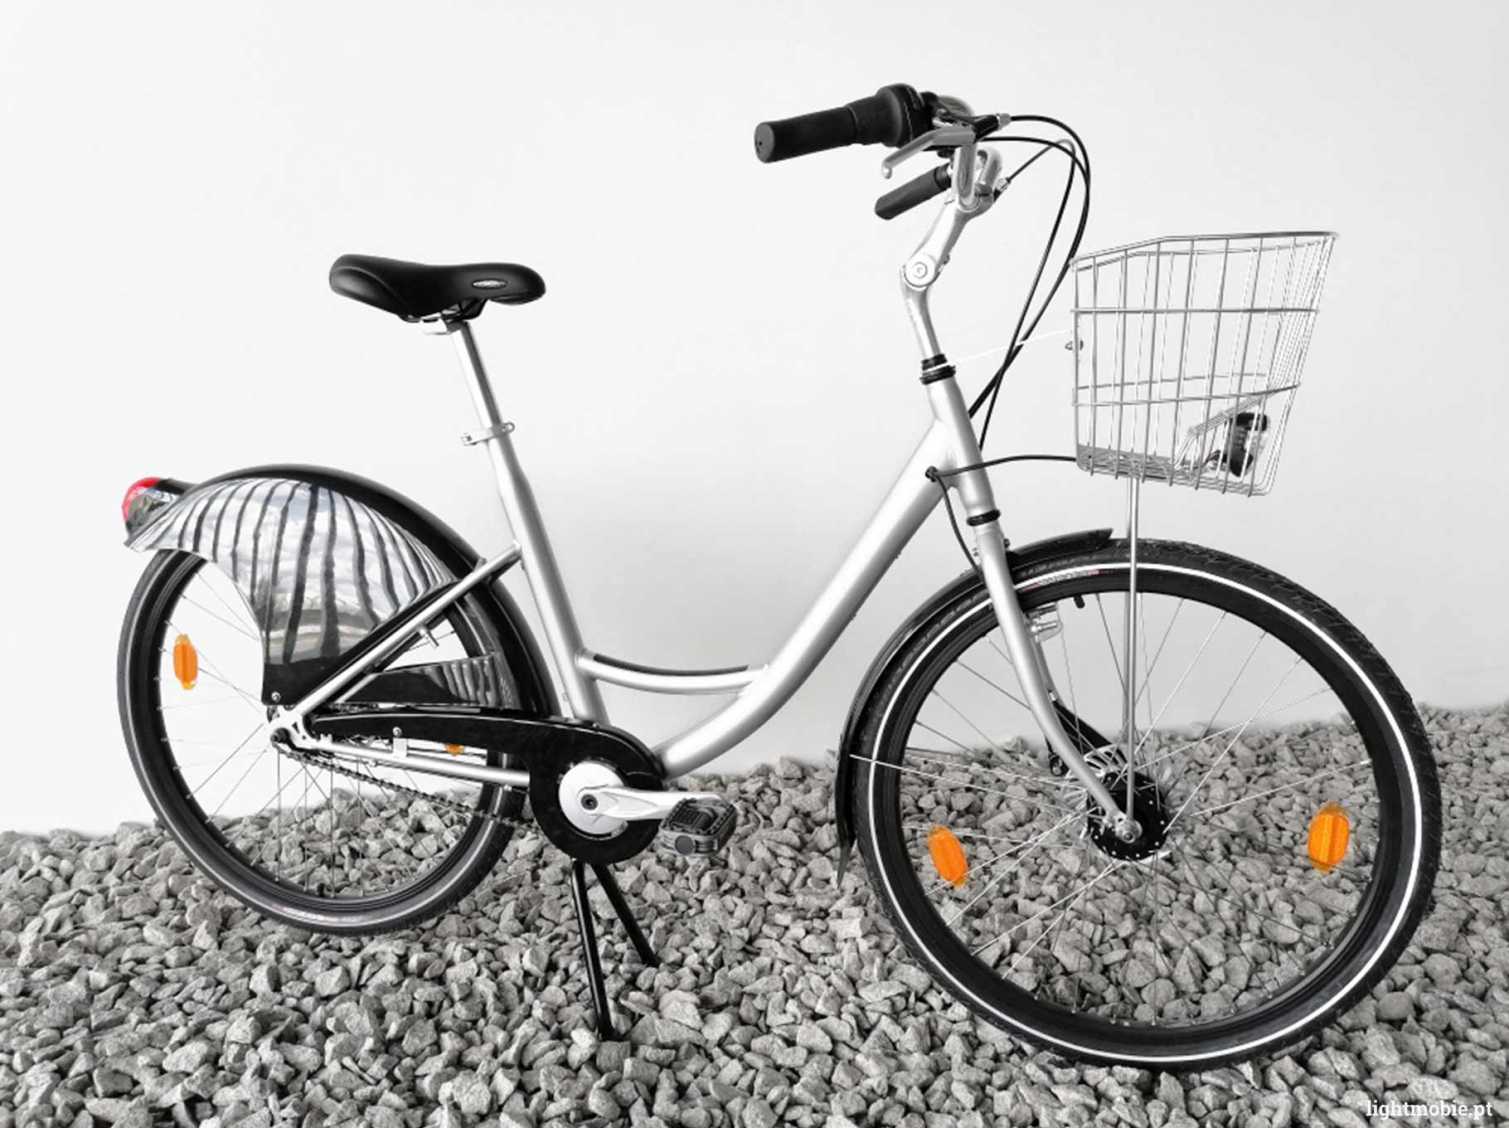 Lyon Bicycle Bike Sharing - LightMobie